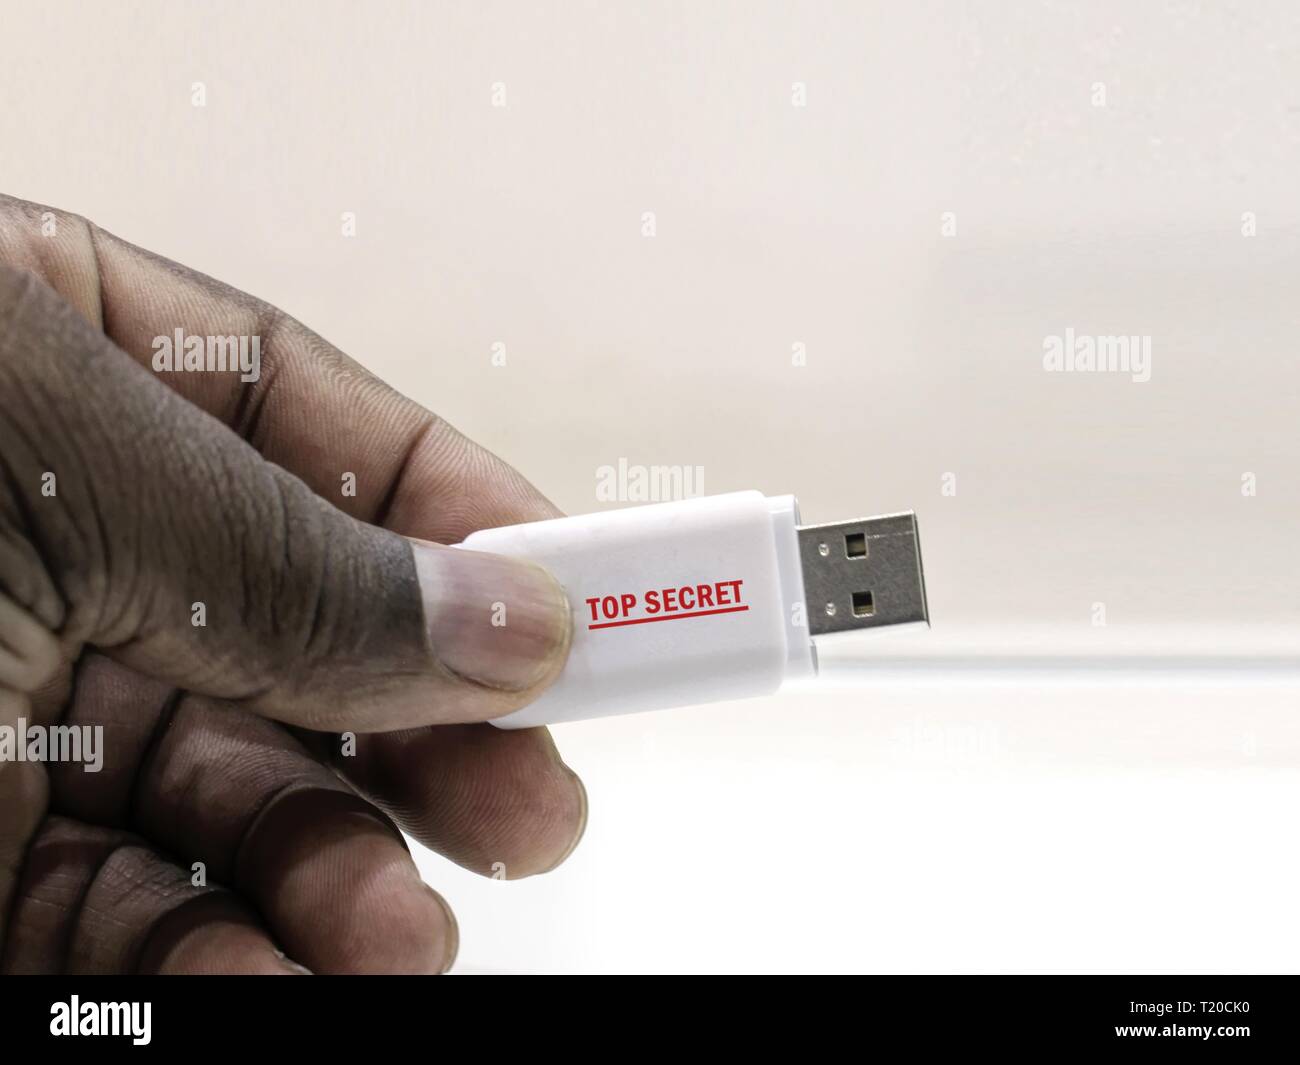 Per informazioni classificate. Persona africana la mano che regge un drive flash USB con un Top Secret etichetta, contenenti informazioni riservate. Foto Stock